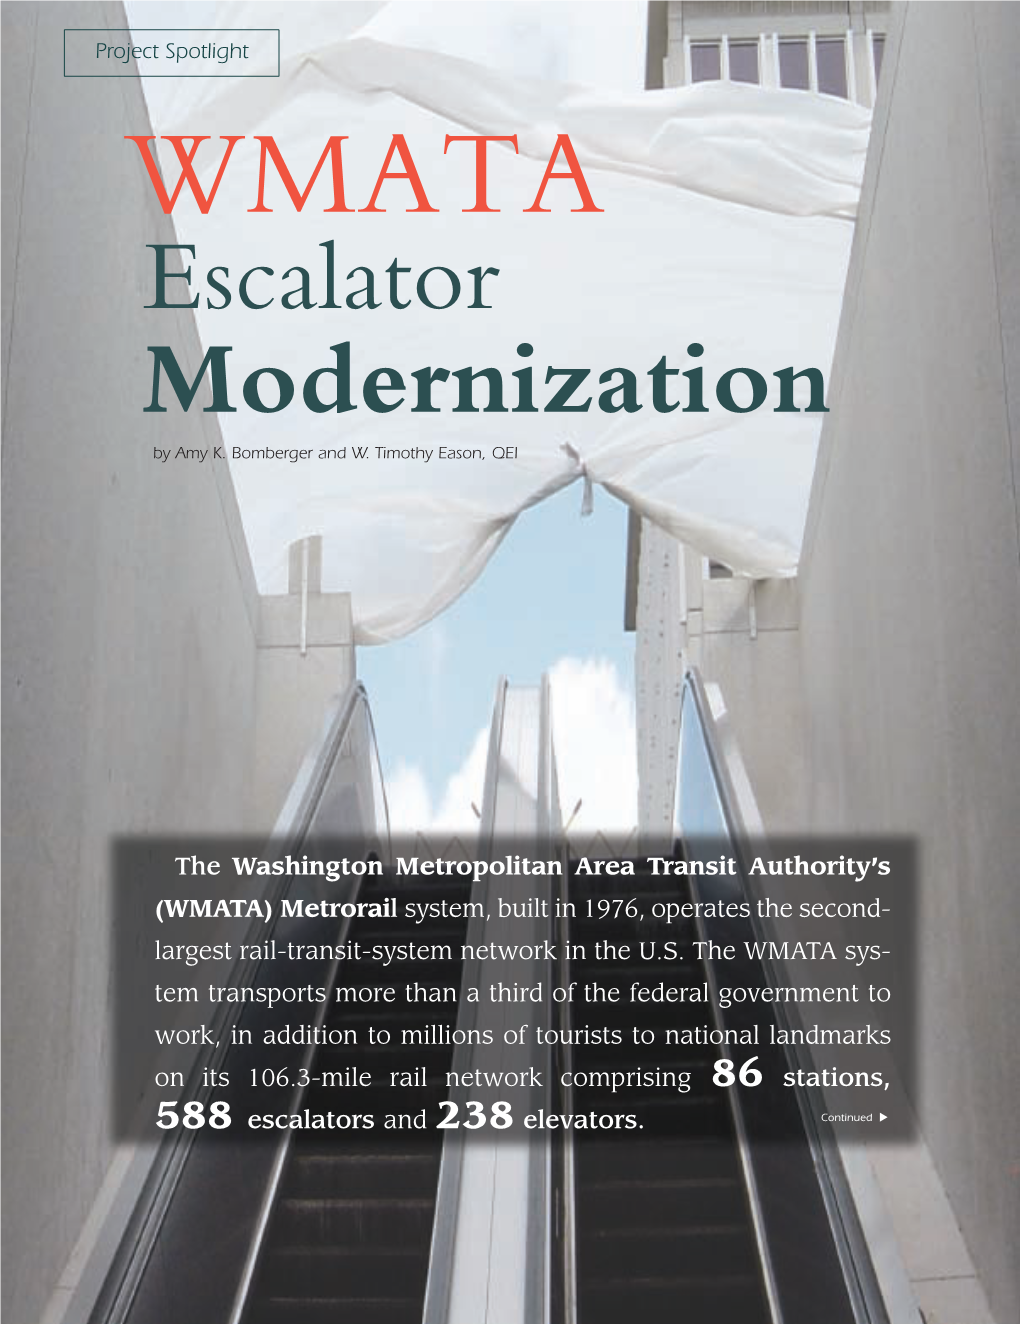 WMATA Escalator Modernization by Amy K